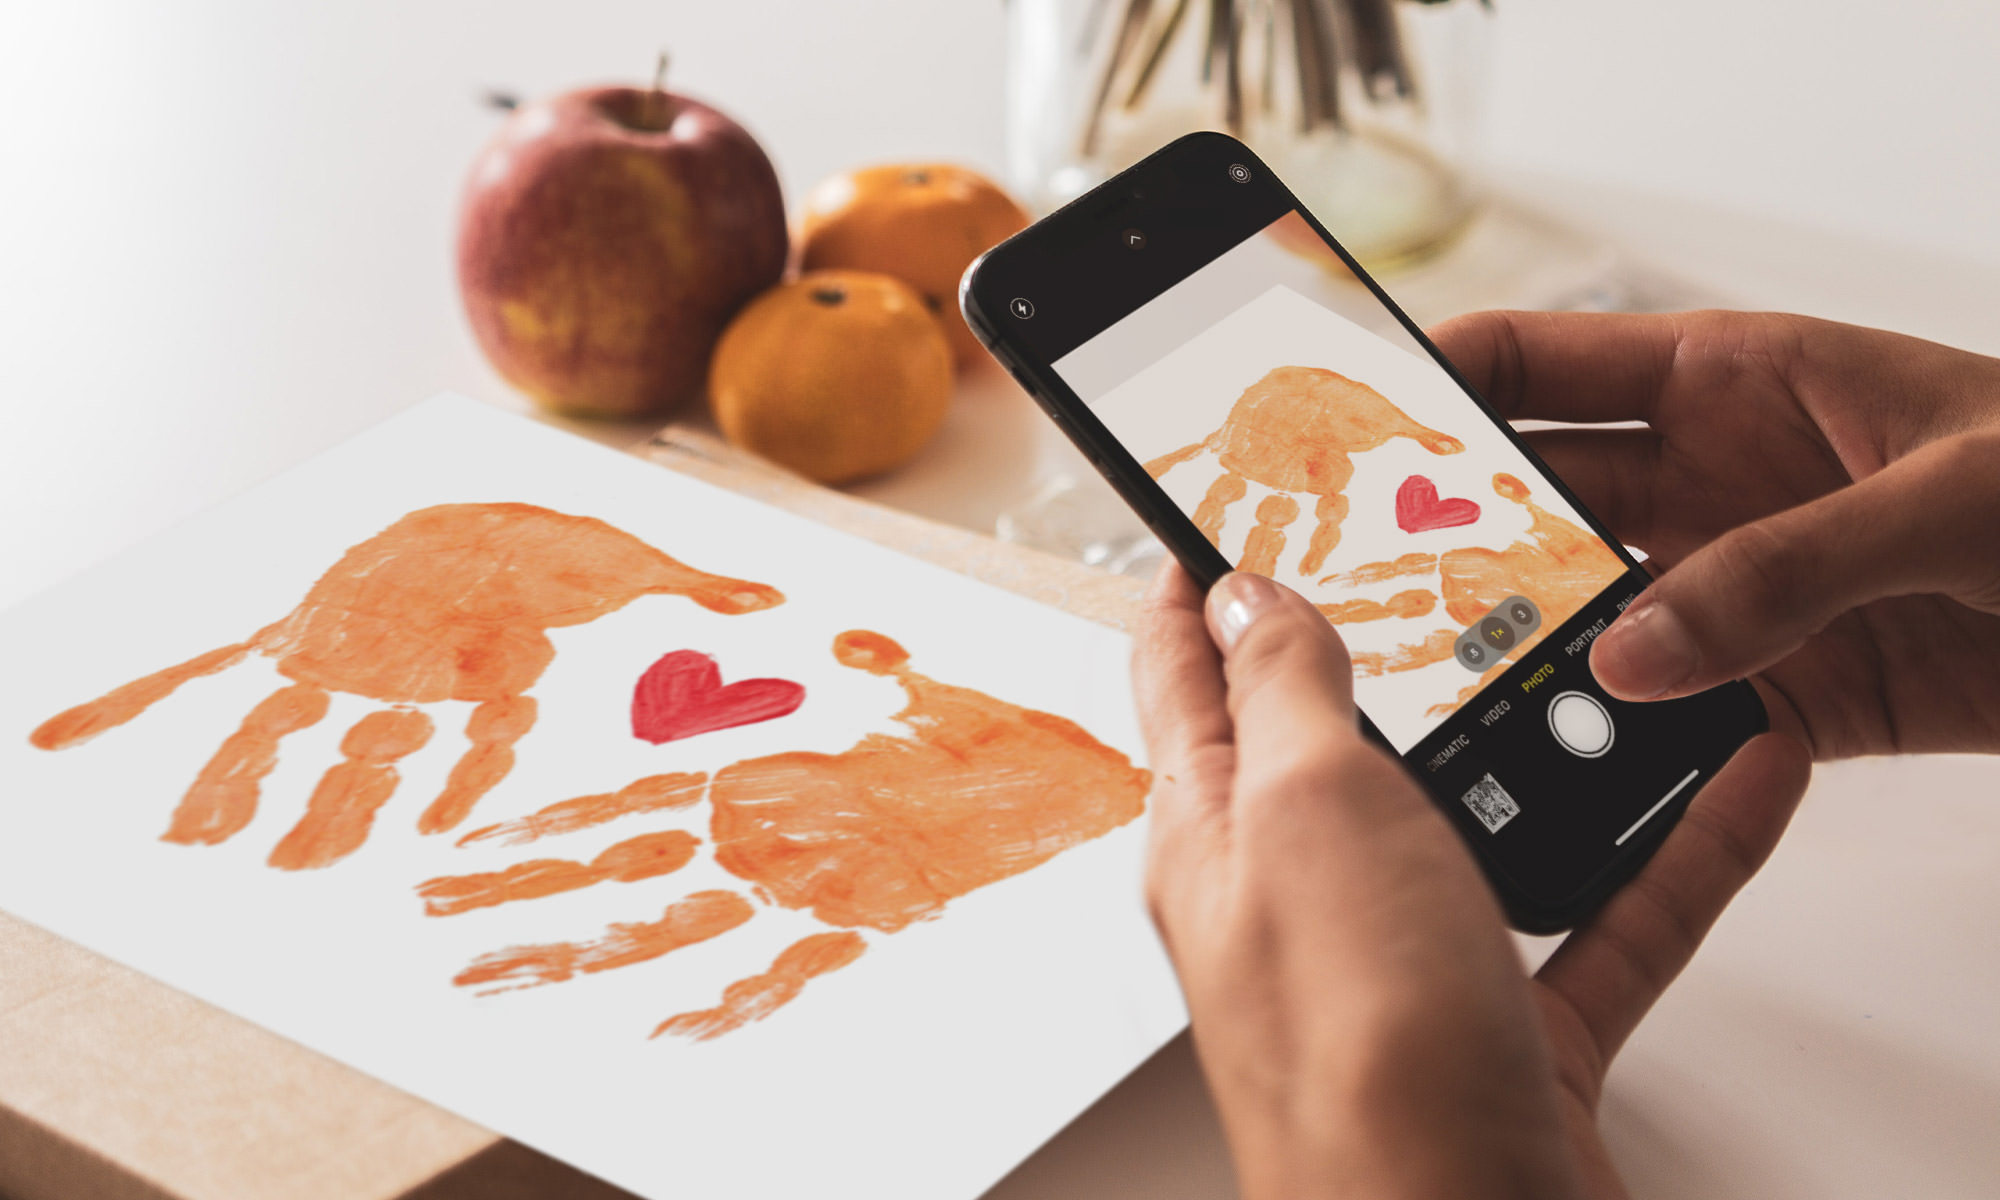 Fotografiando el arte impreso a mano con la cámara del smartphone.